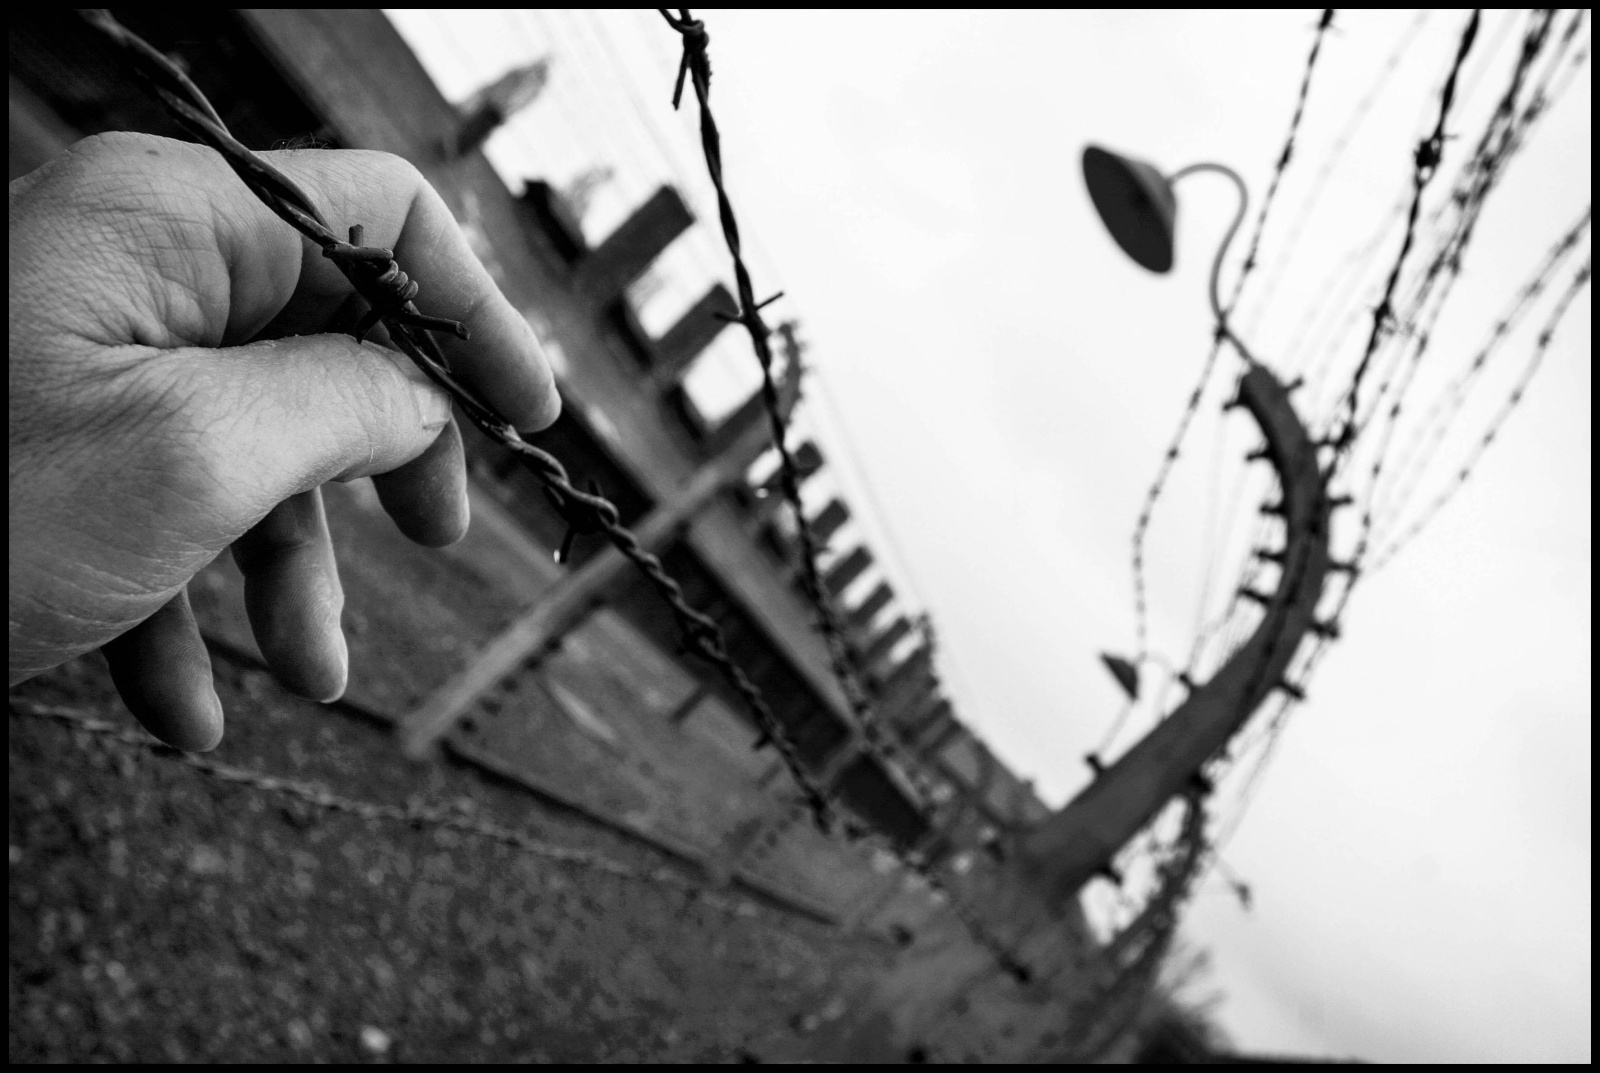 Il campo di concentramento di Auschwitz fu reso operativo dal 14 giugno 1940 ed è stato un vasto complesso di campi di concentramento e di lavoro situato nelle vicinanze della cittadina polacca di Oświęcim dove morirono  circa 70 000 persone